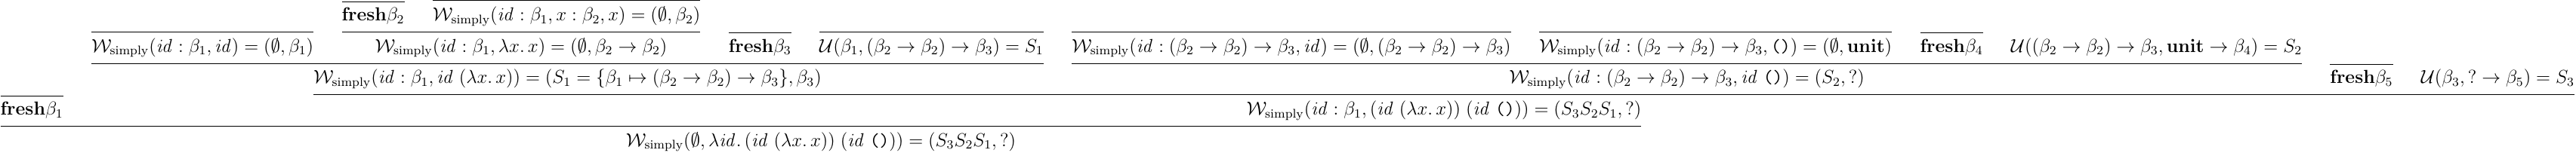 単純型付ラムダ計算の型推論で一部単一化に失敗する